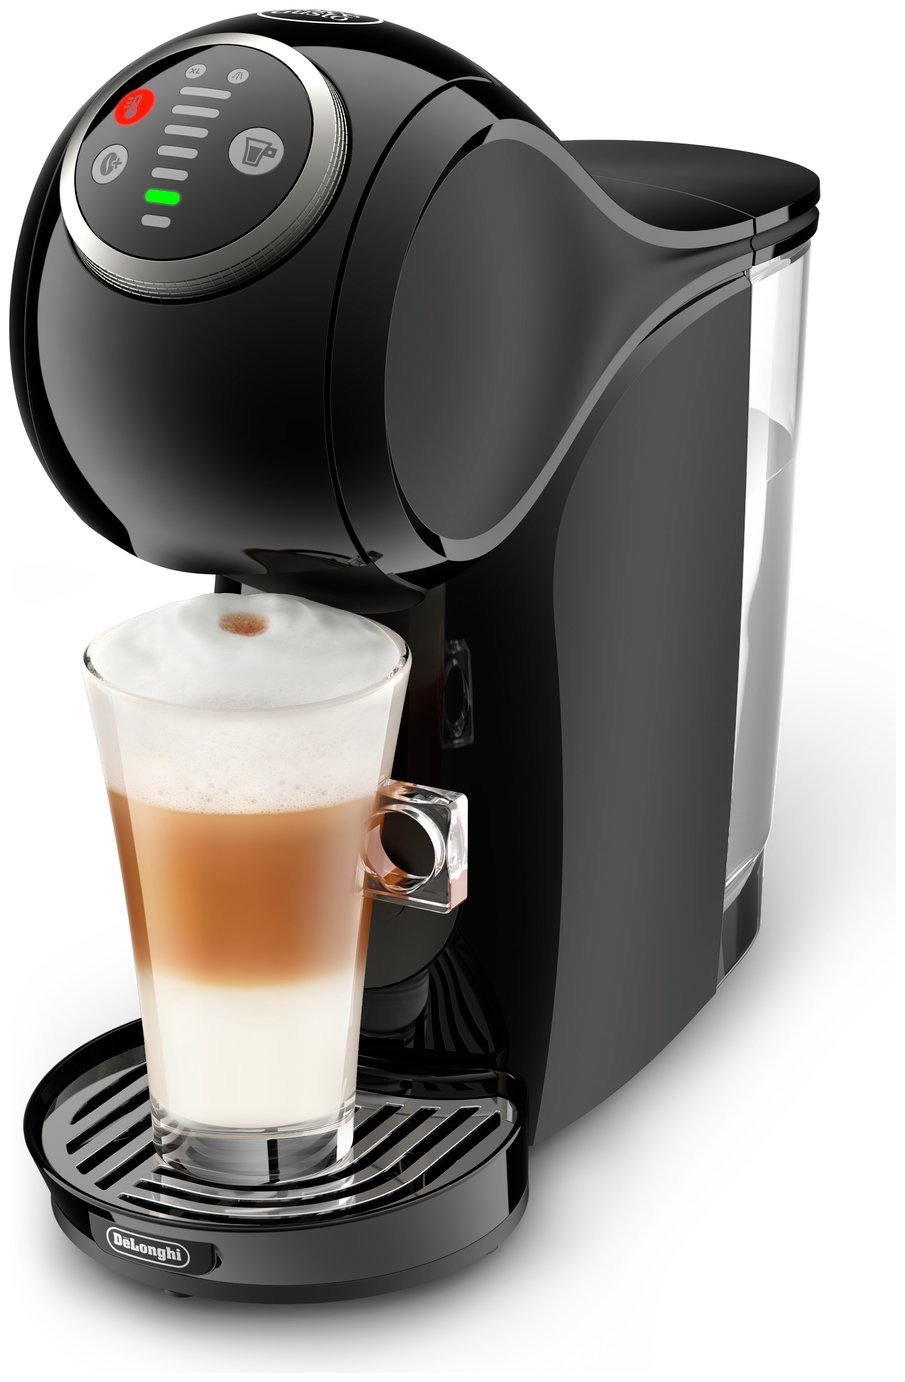 Nescafe Dolce Gusto Genio S Plus Pod Coffee Machine - Black